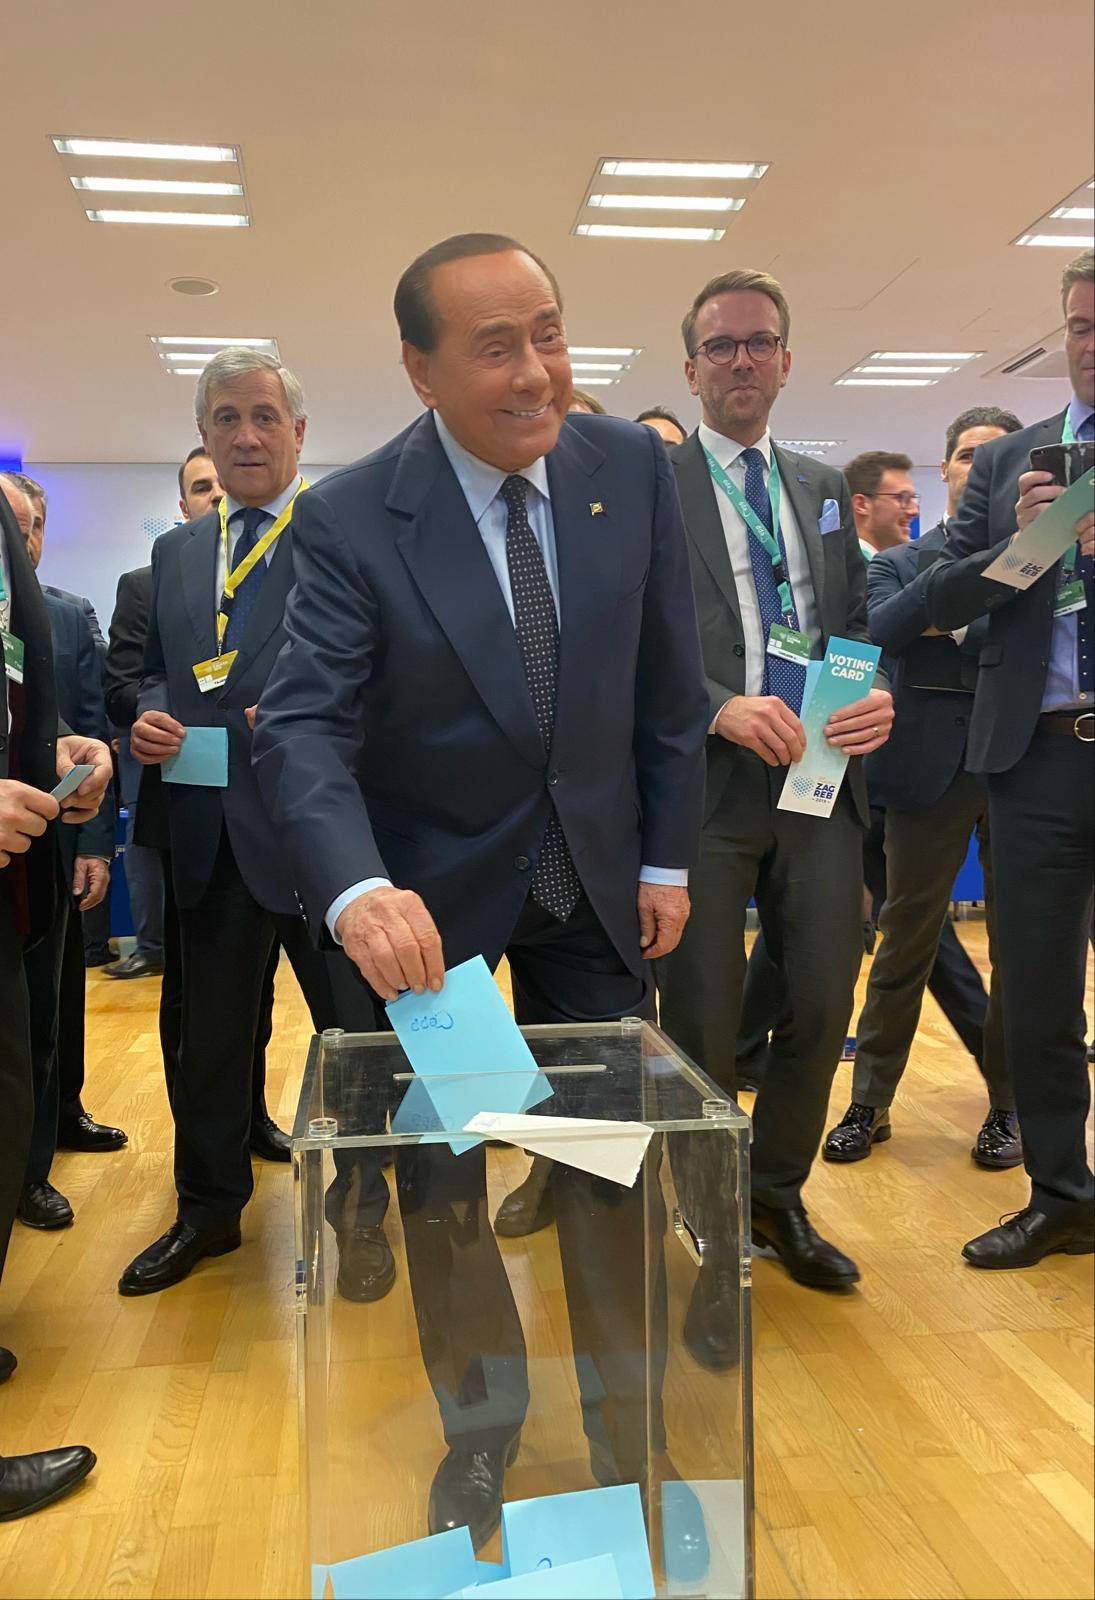 Berlusconi al congresso Ppe: "Rinasca il sogno europeo contro gli egoismi nazionali"